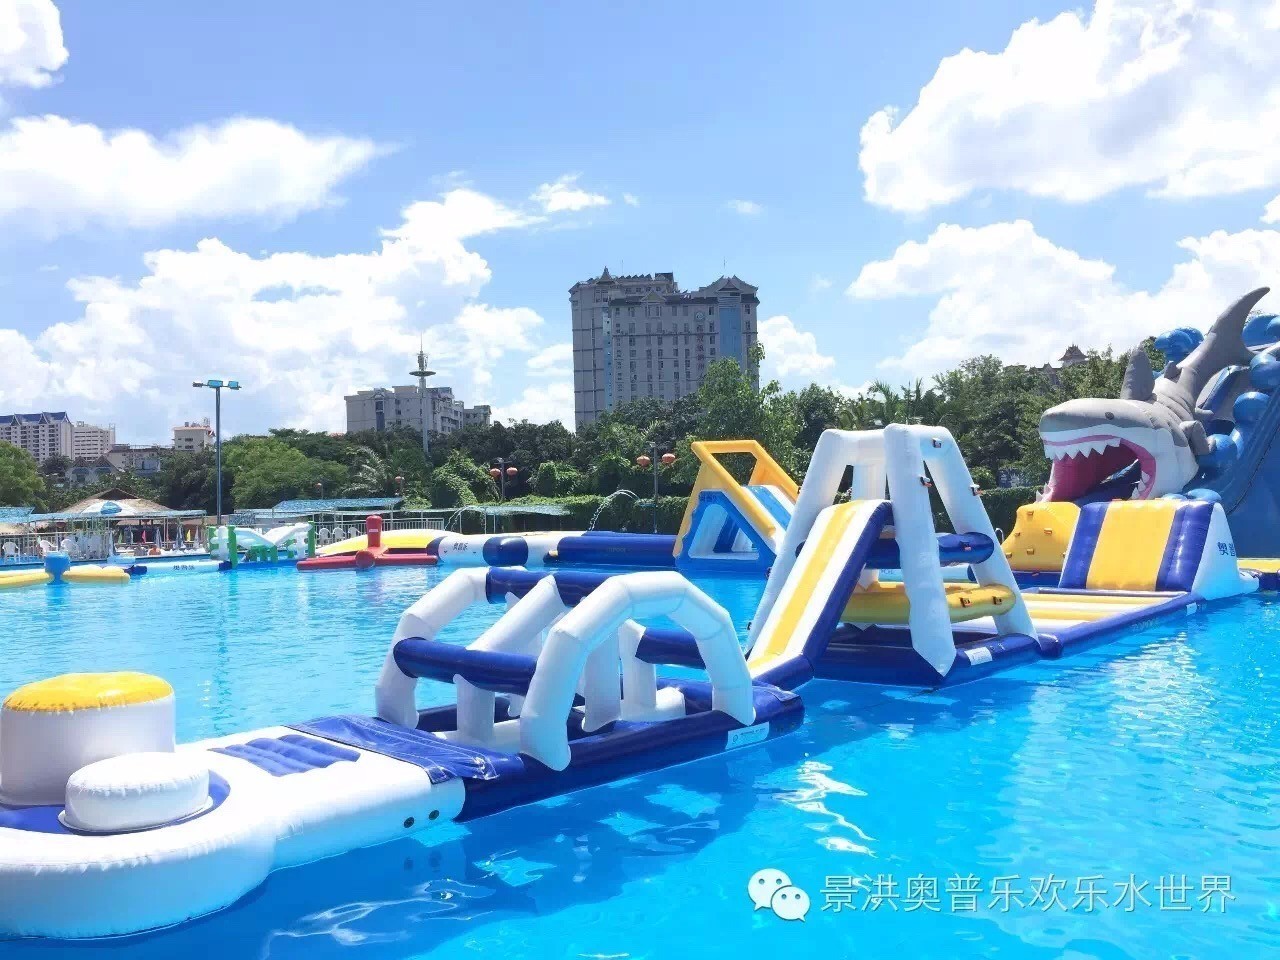 景洪奥普乐欢乐水世界 将于本周六(2017年2月25日) 开始试营业开放!